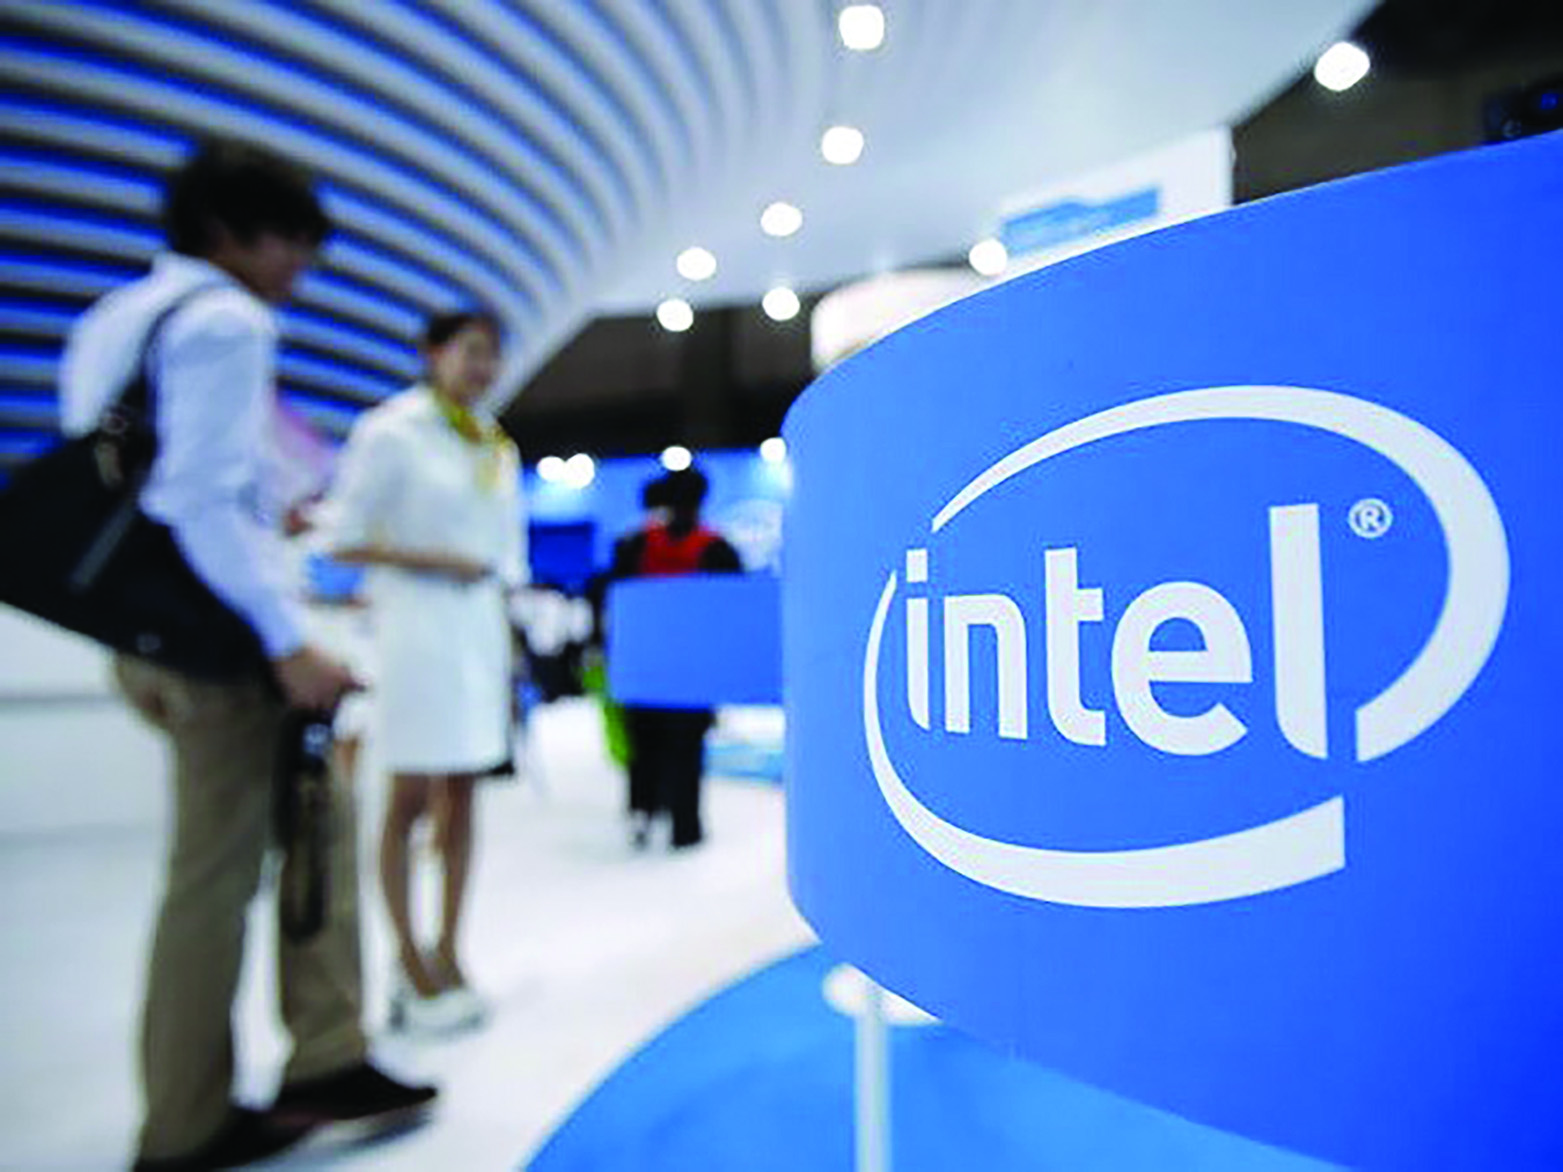  Intel đang xem xét tăng đáng kể khoản đầu tư 1,5 tỷ USD hiện tại vào Việt Nam nhằm củng cố vị thế của Việt Nam trong chuỗi cung ứng toàn cầu về chất bán dẫn.